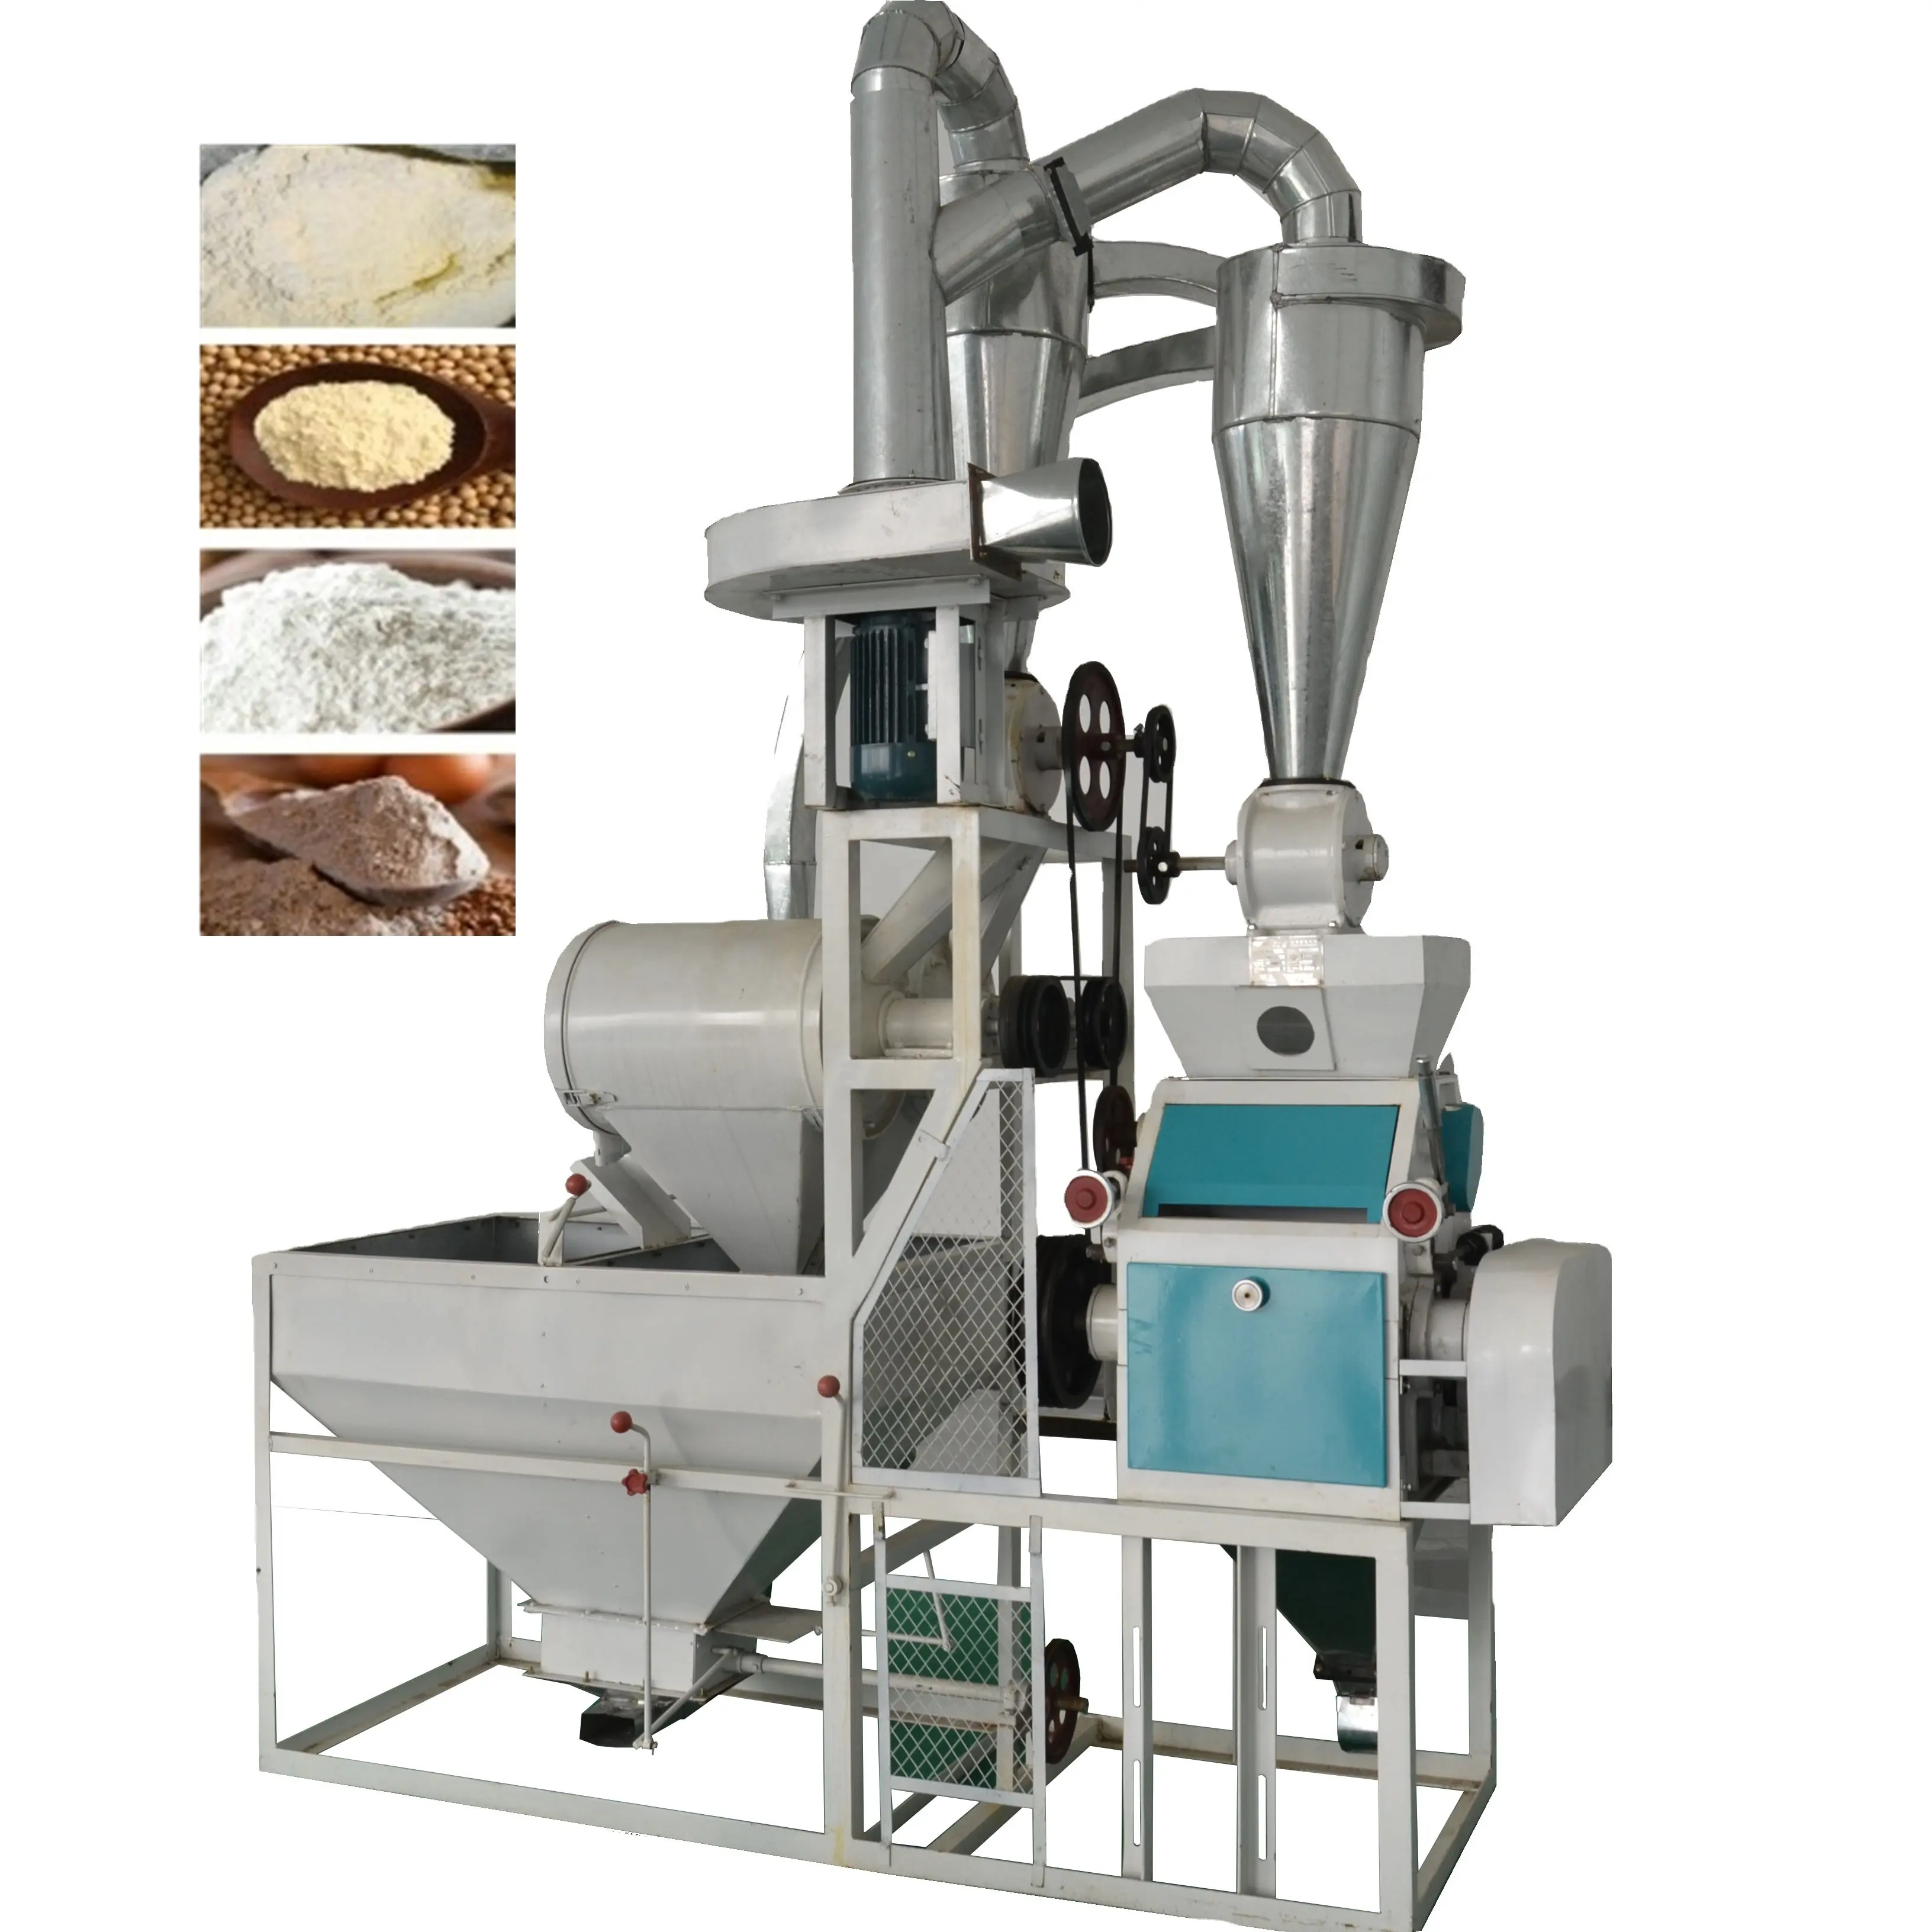 トウモロコシ製粉機400-500キログラム/時間小麦粉工場